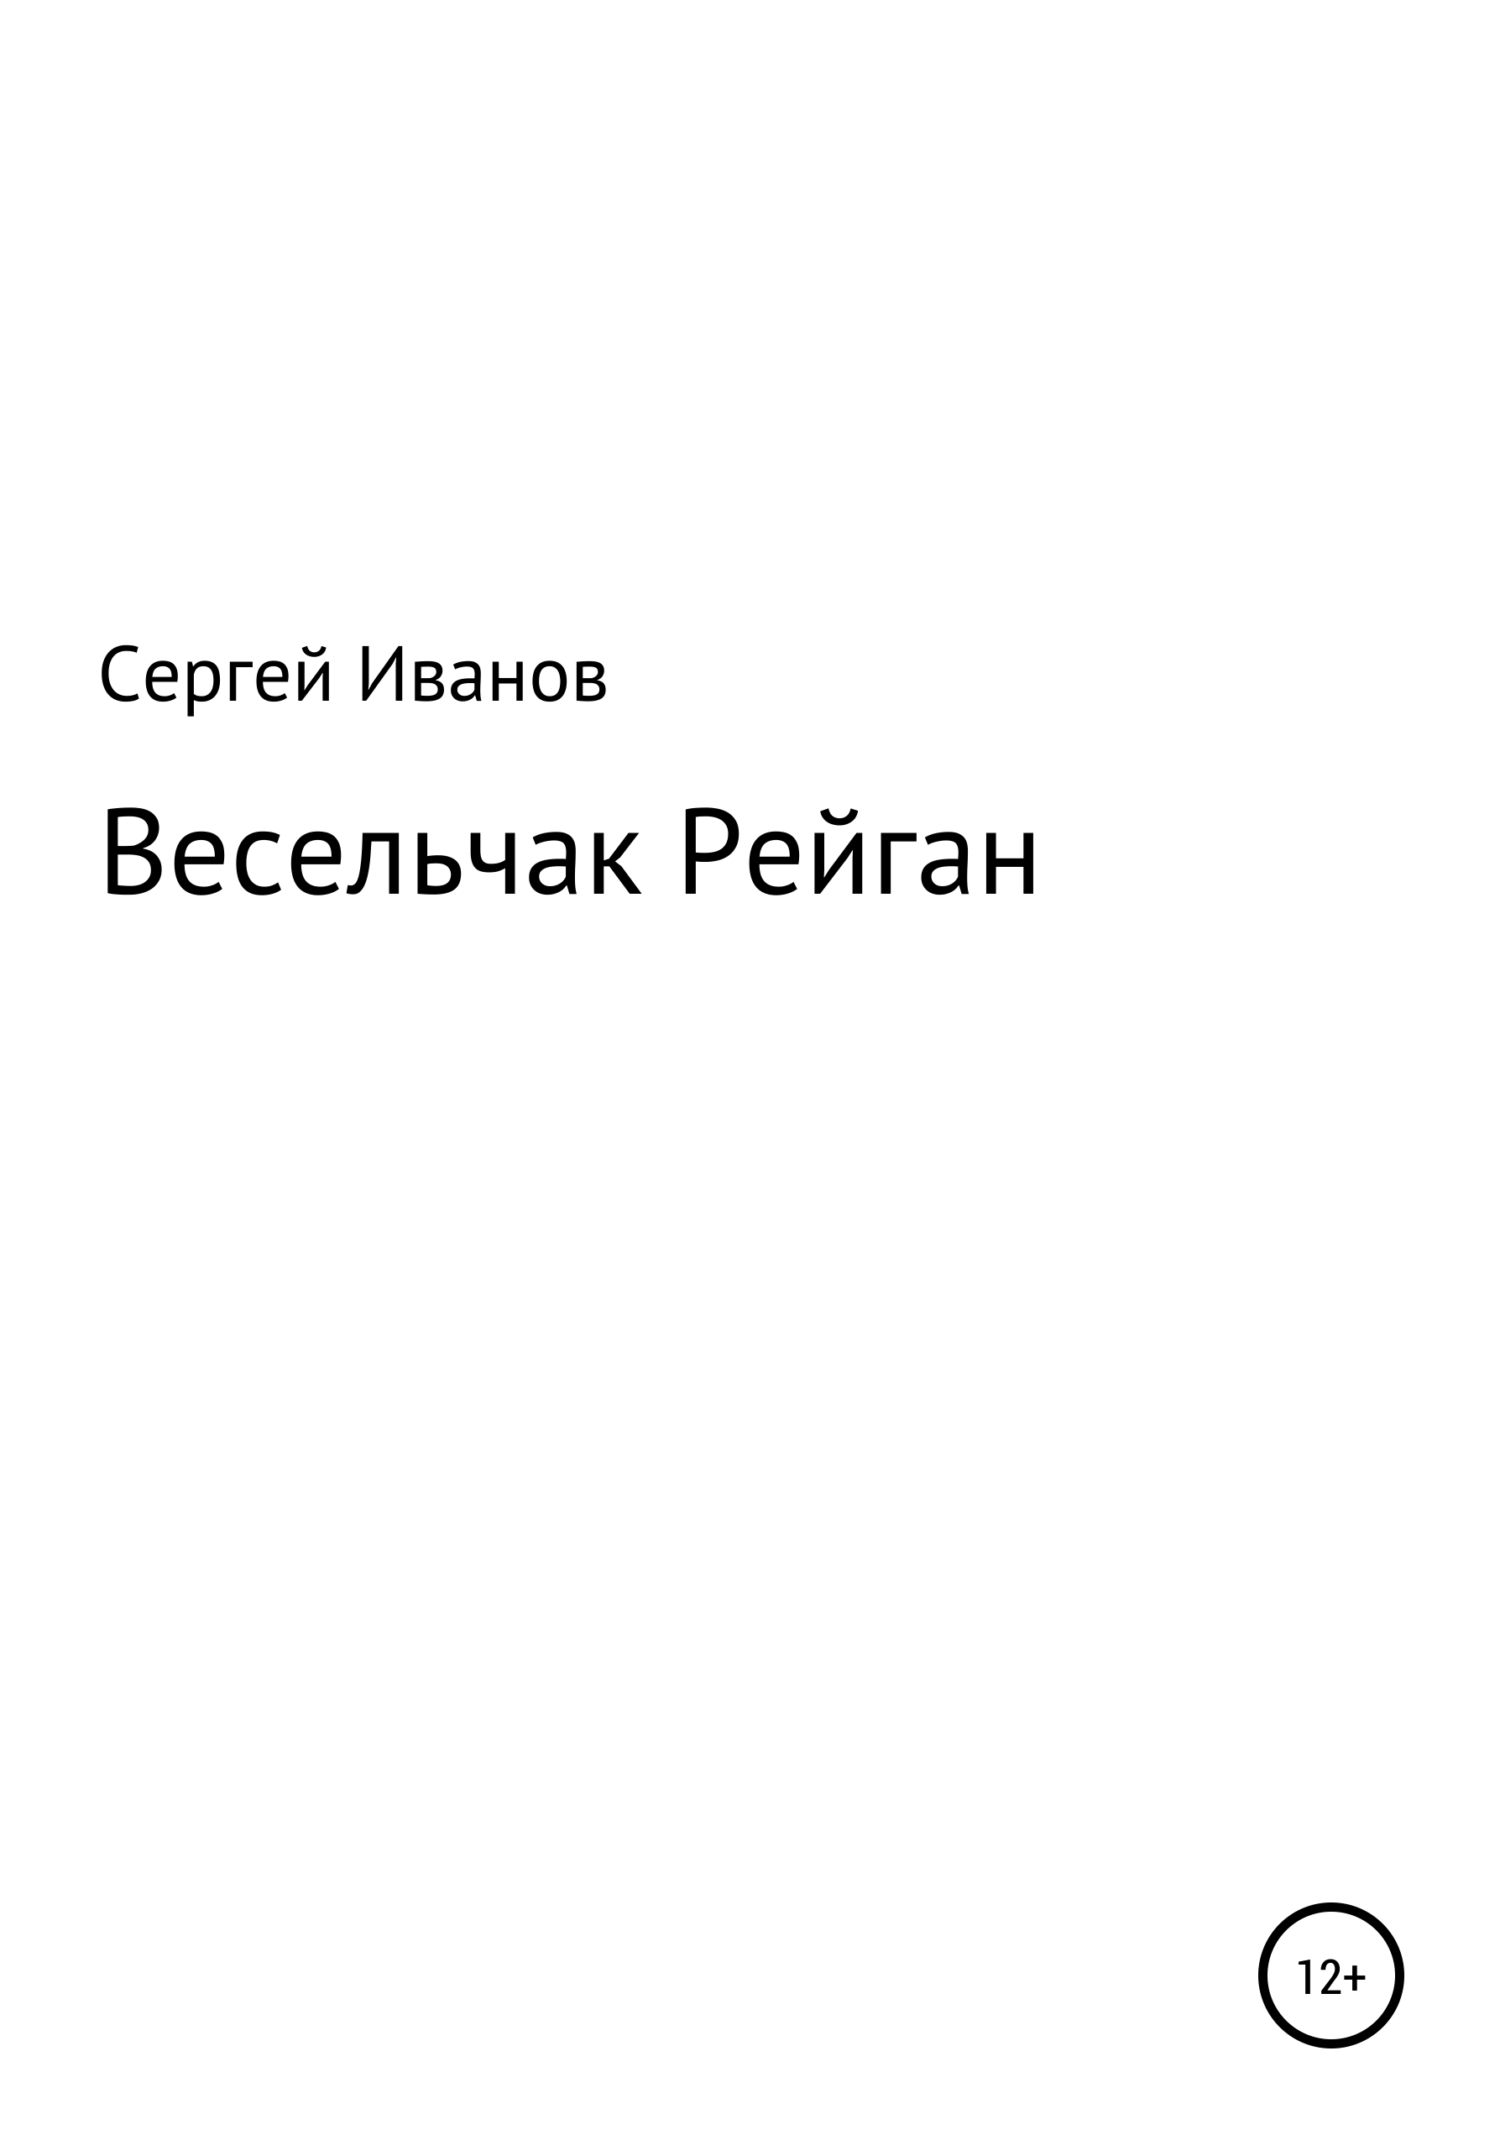 Весельчак Рейган - Сергей Федорович Иванов